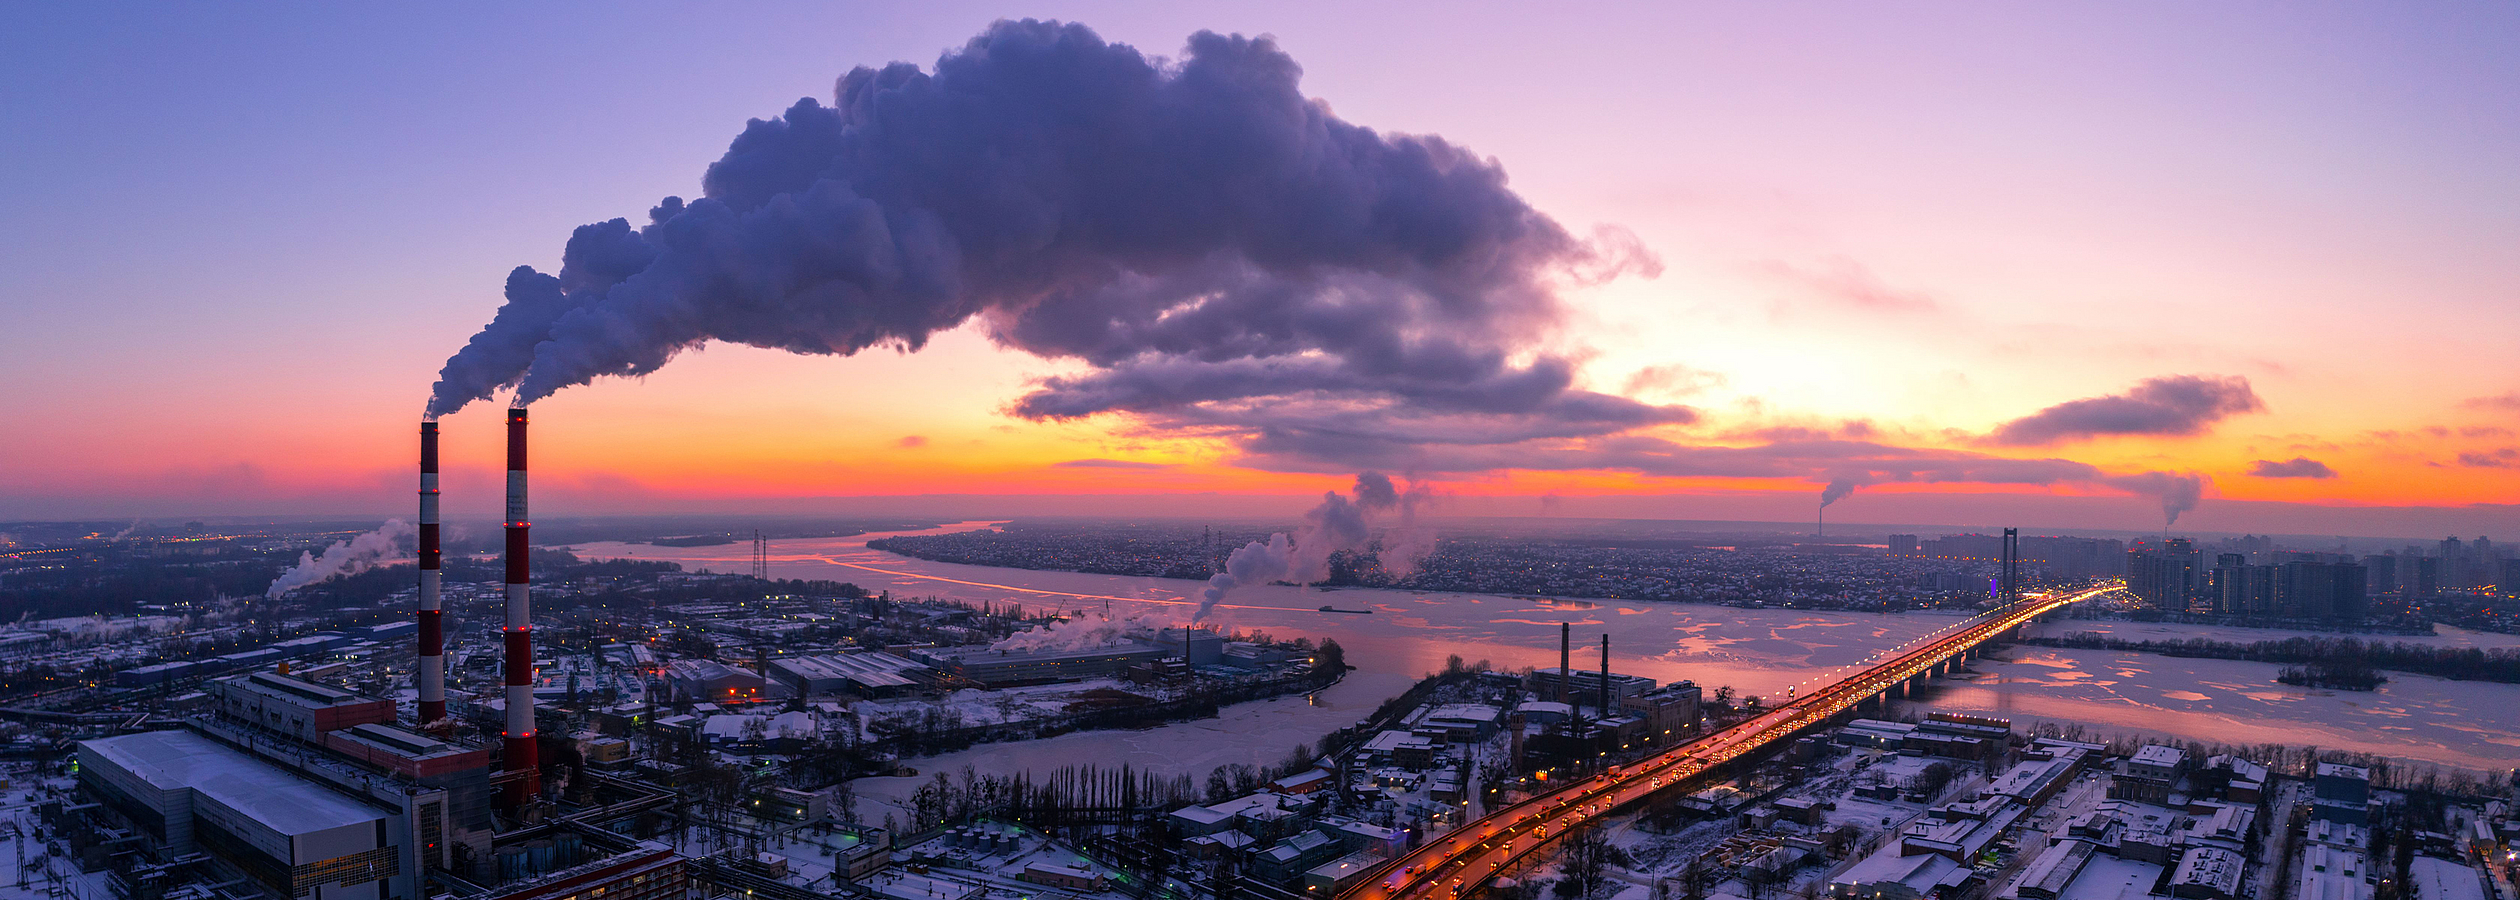 Luftbild einer Stadt am Fluss bei Sonnenaufgang. Aus hohen Fabrikschornsteinen steigt eine große Menge Rauch auf.